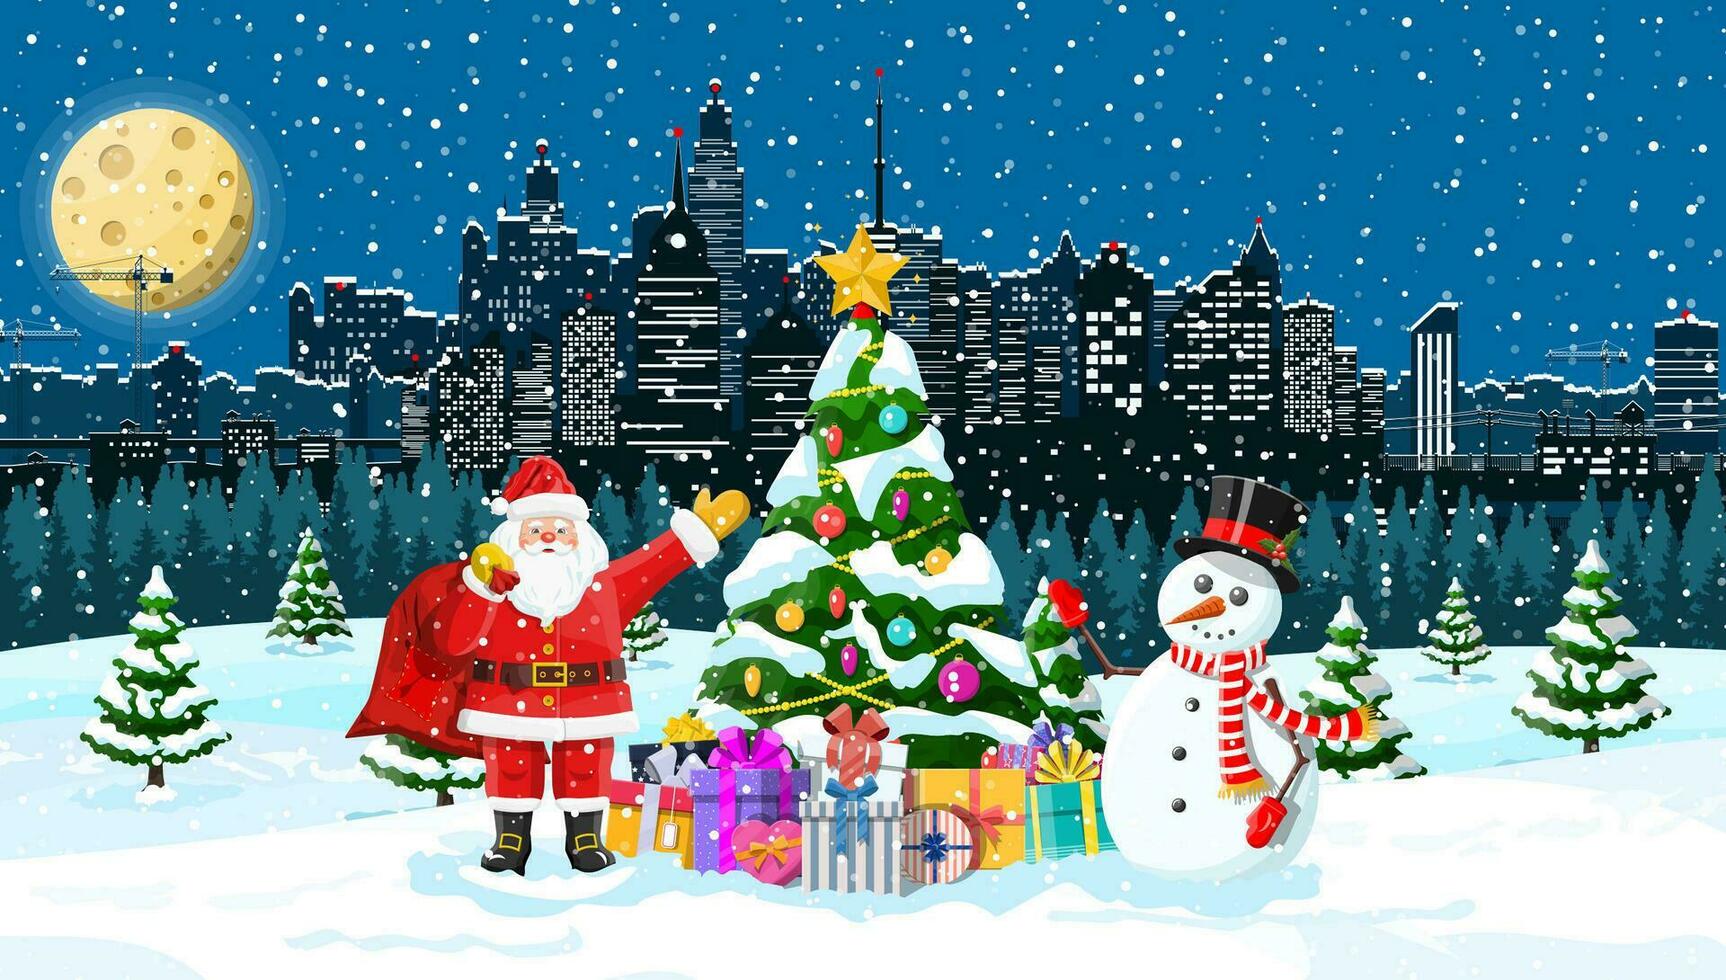 Papa Noel claus con muñeco de nieve. Navidad invierno paisaje urbano, copos de nieve y arboles contento nuevo año decoración. alegre Navidad día festivo. nuevo año y Navidad celebracion. vector ilustración plano estilo